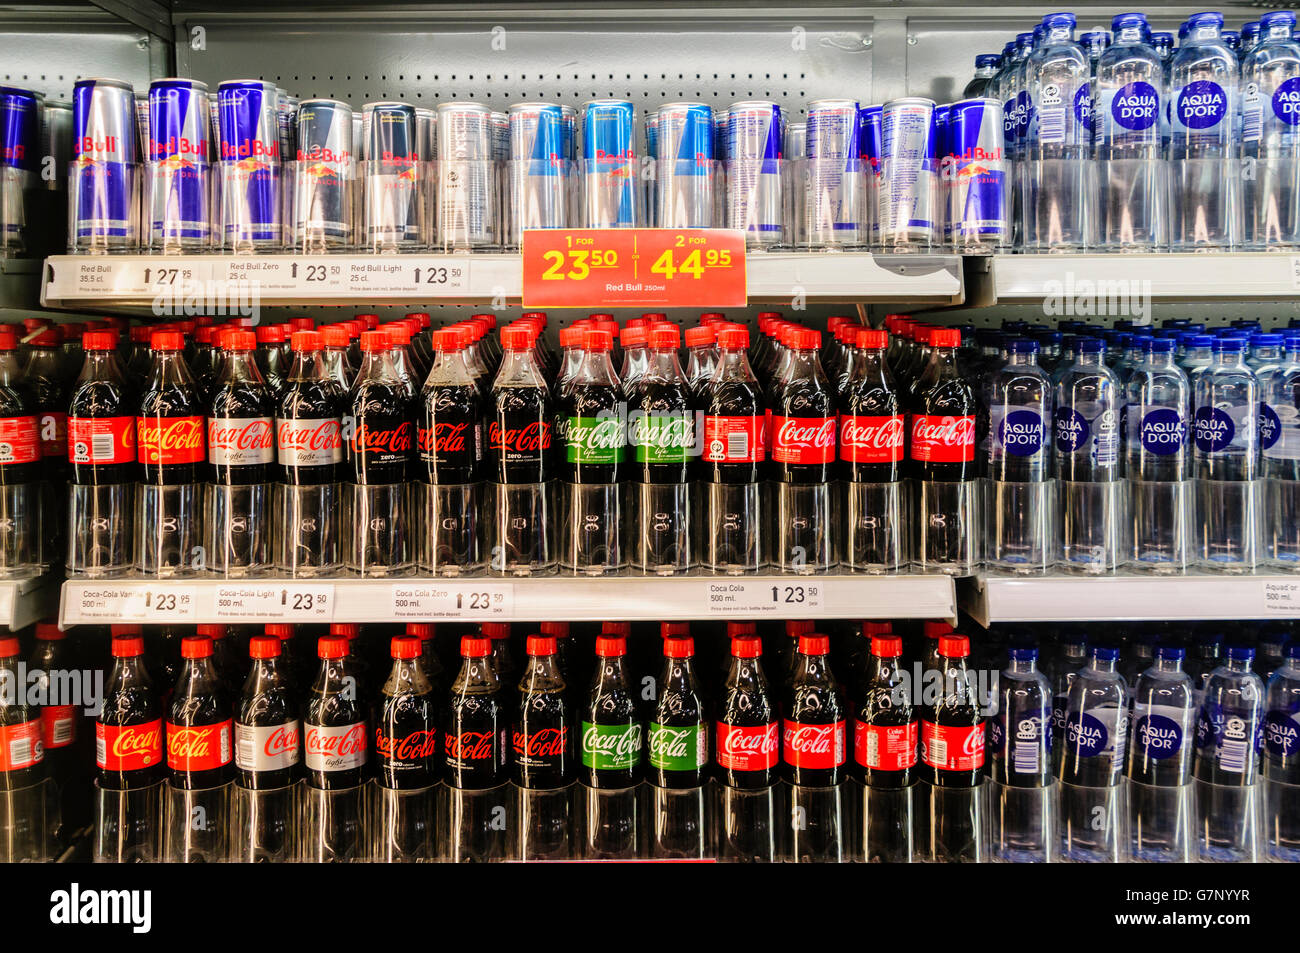 Coca cola (ordinaire, l'alimentation/Lumière/lite, et de la vie) avec Red Bull energy drinks et l'eau en bouteille pour la vente dans un magasin au Danemark. Banque D'Images